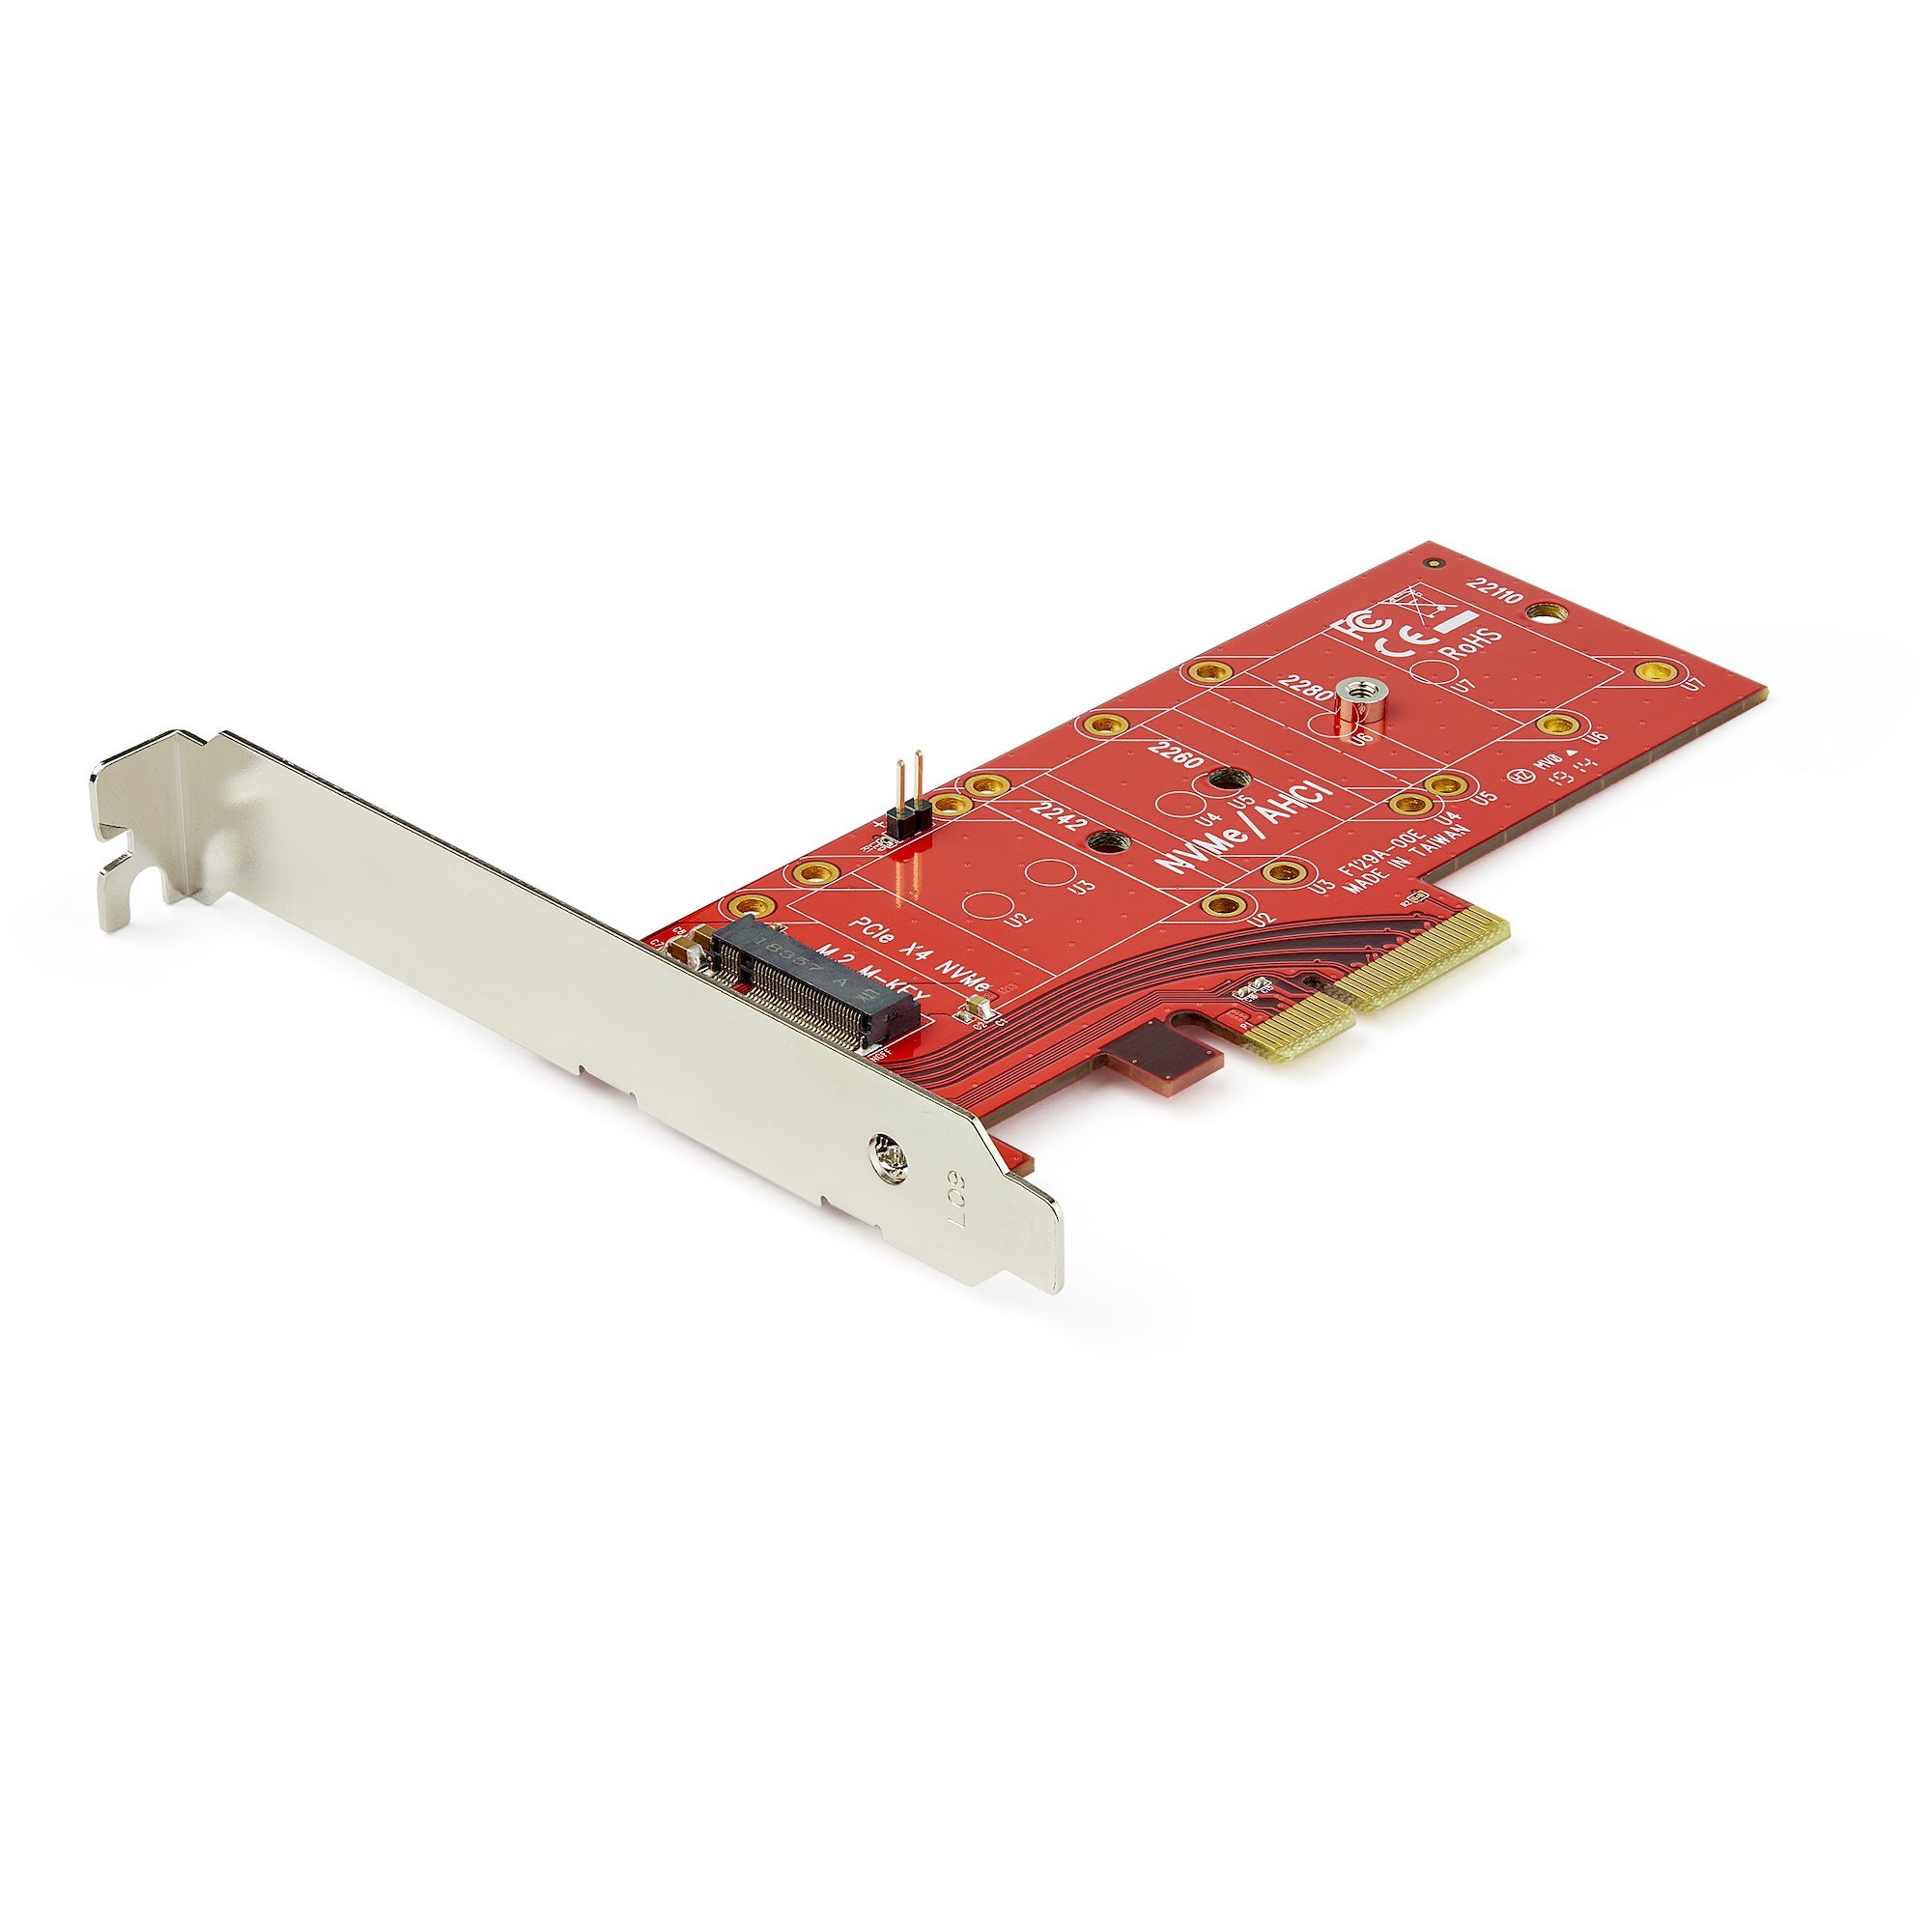 【PEX4M2E1】X4 PCIE - M.2 PCIE SSD ADAPTER